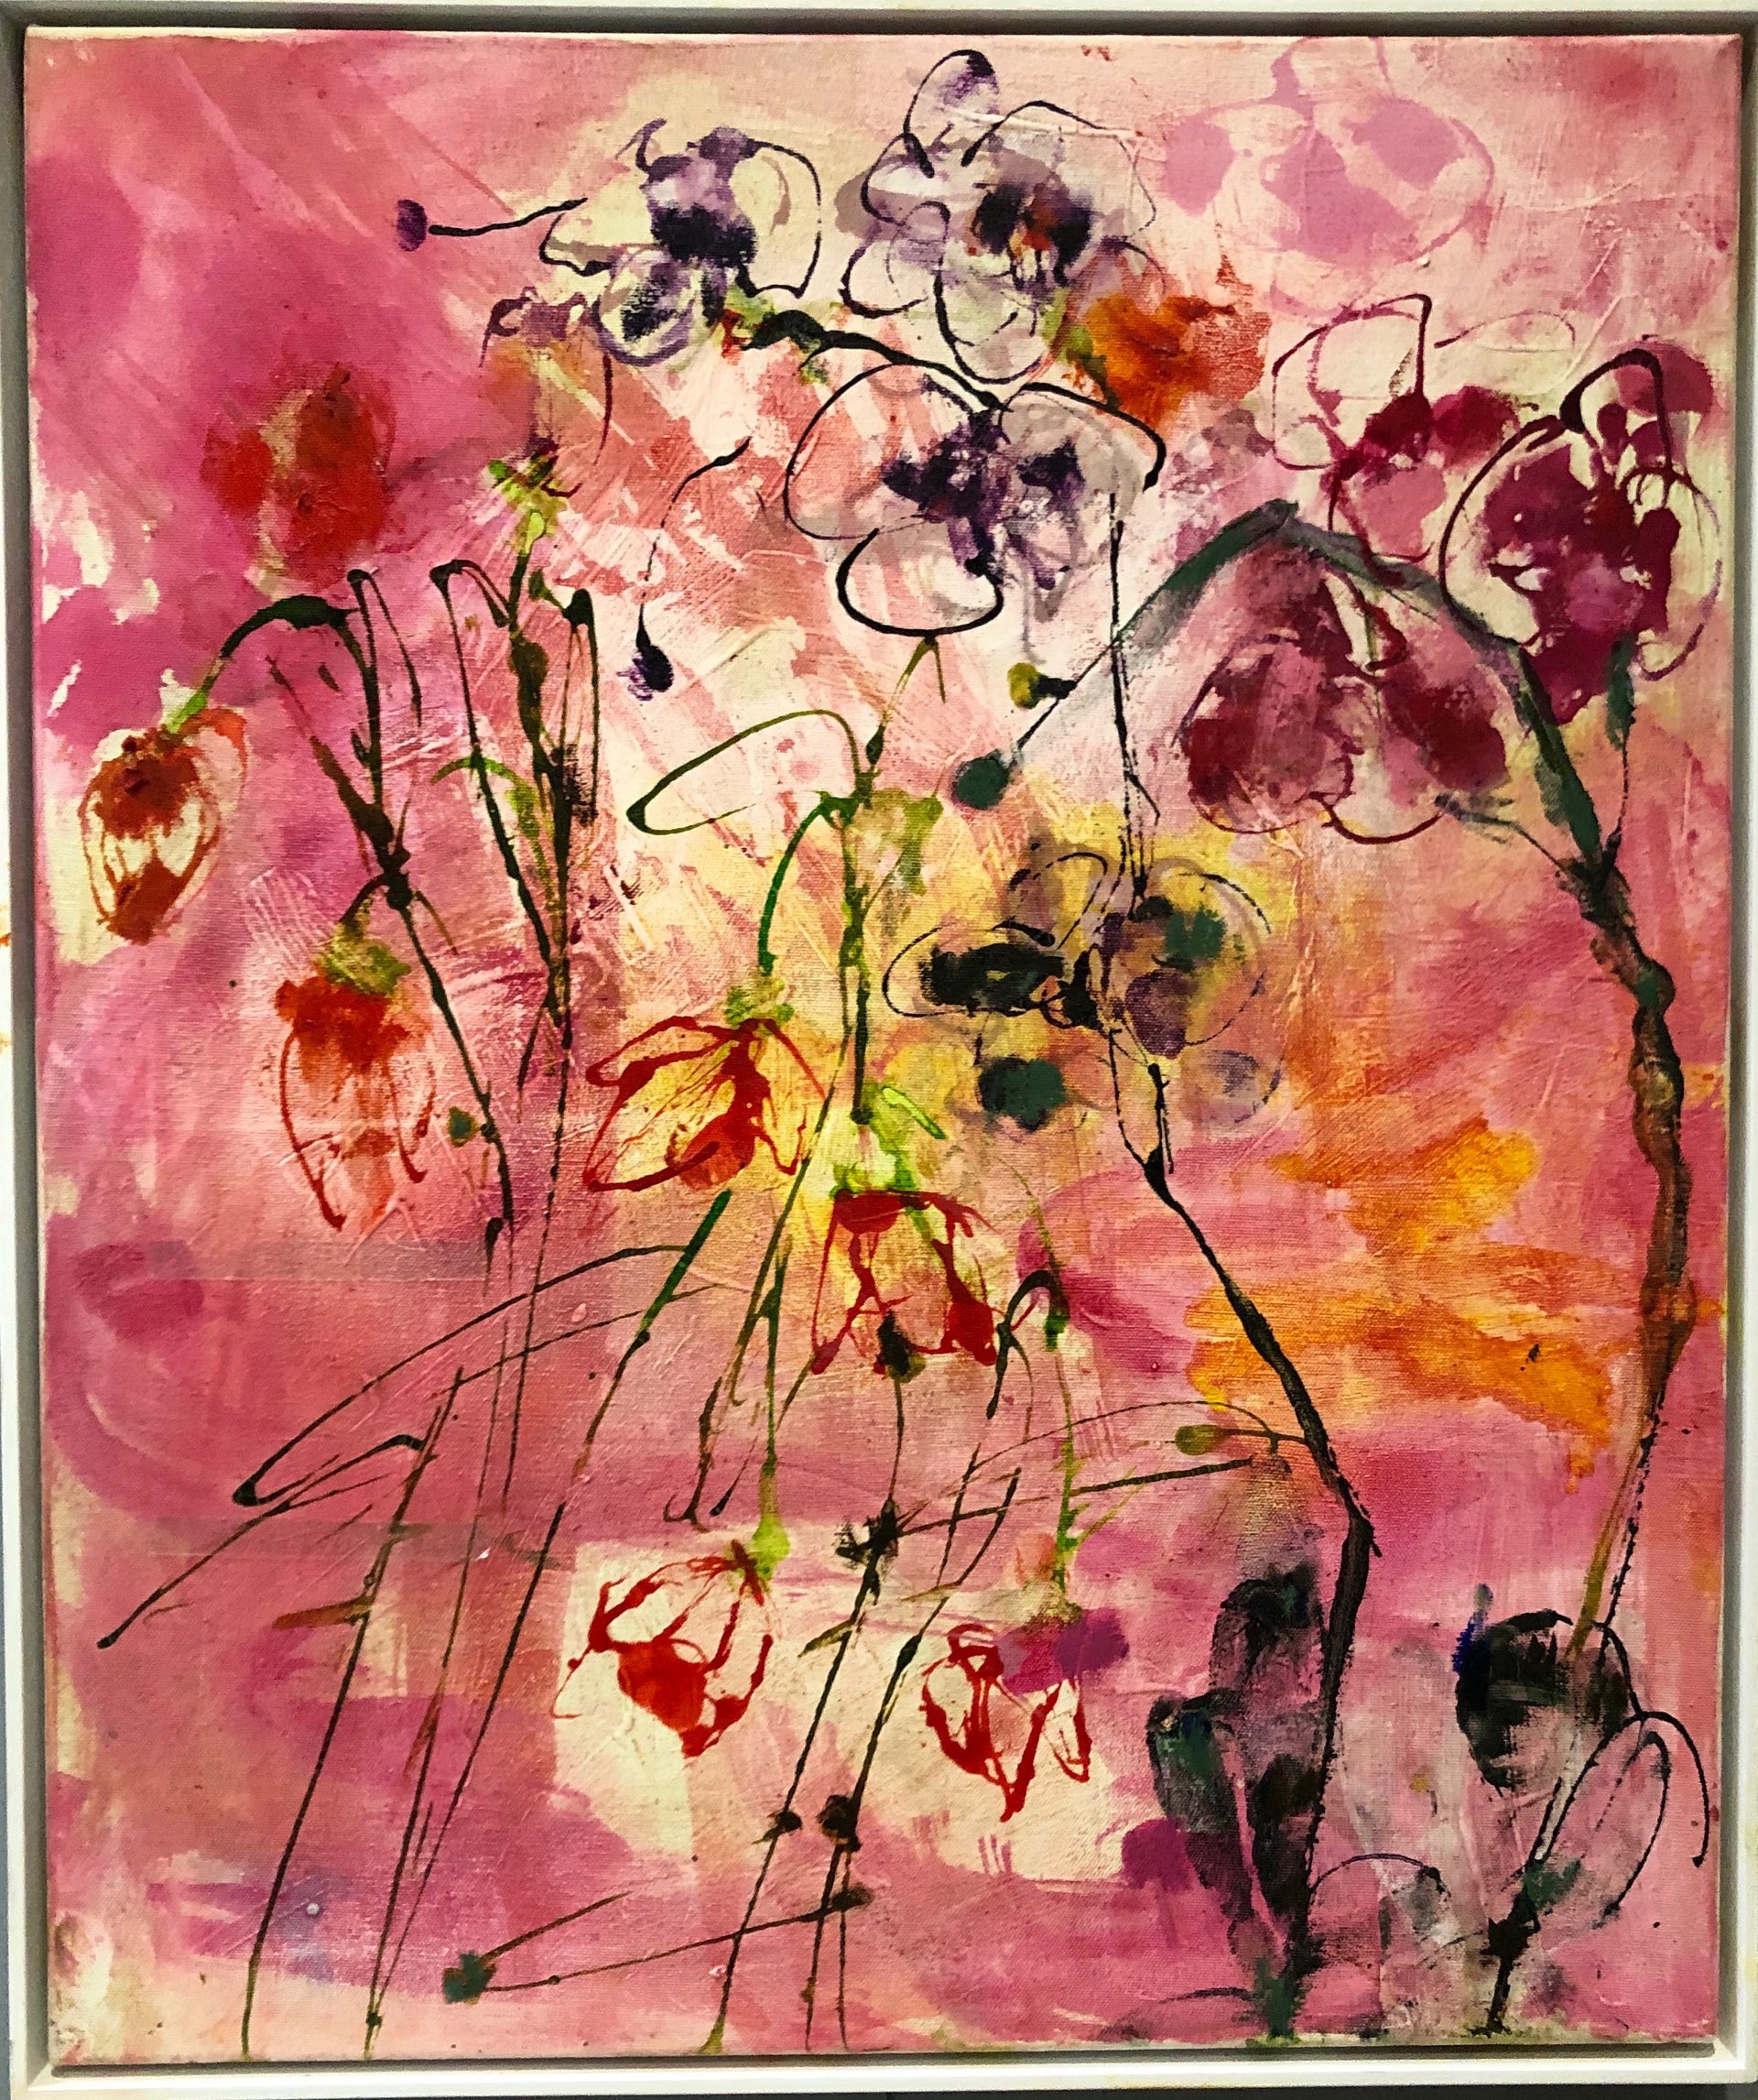 Mary Schepisi Summer Flower-breathe deeply